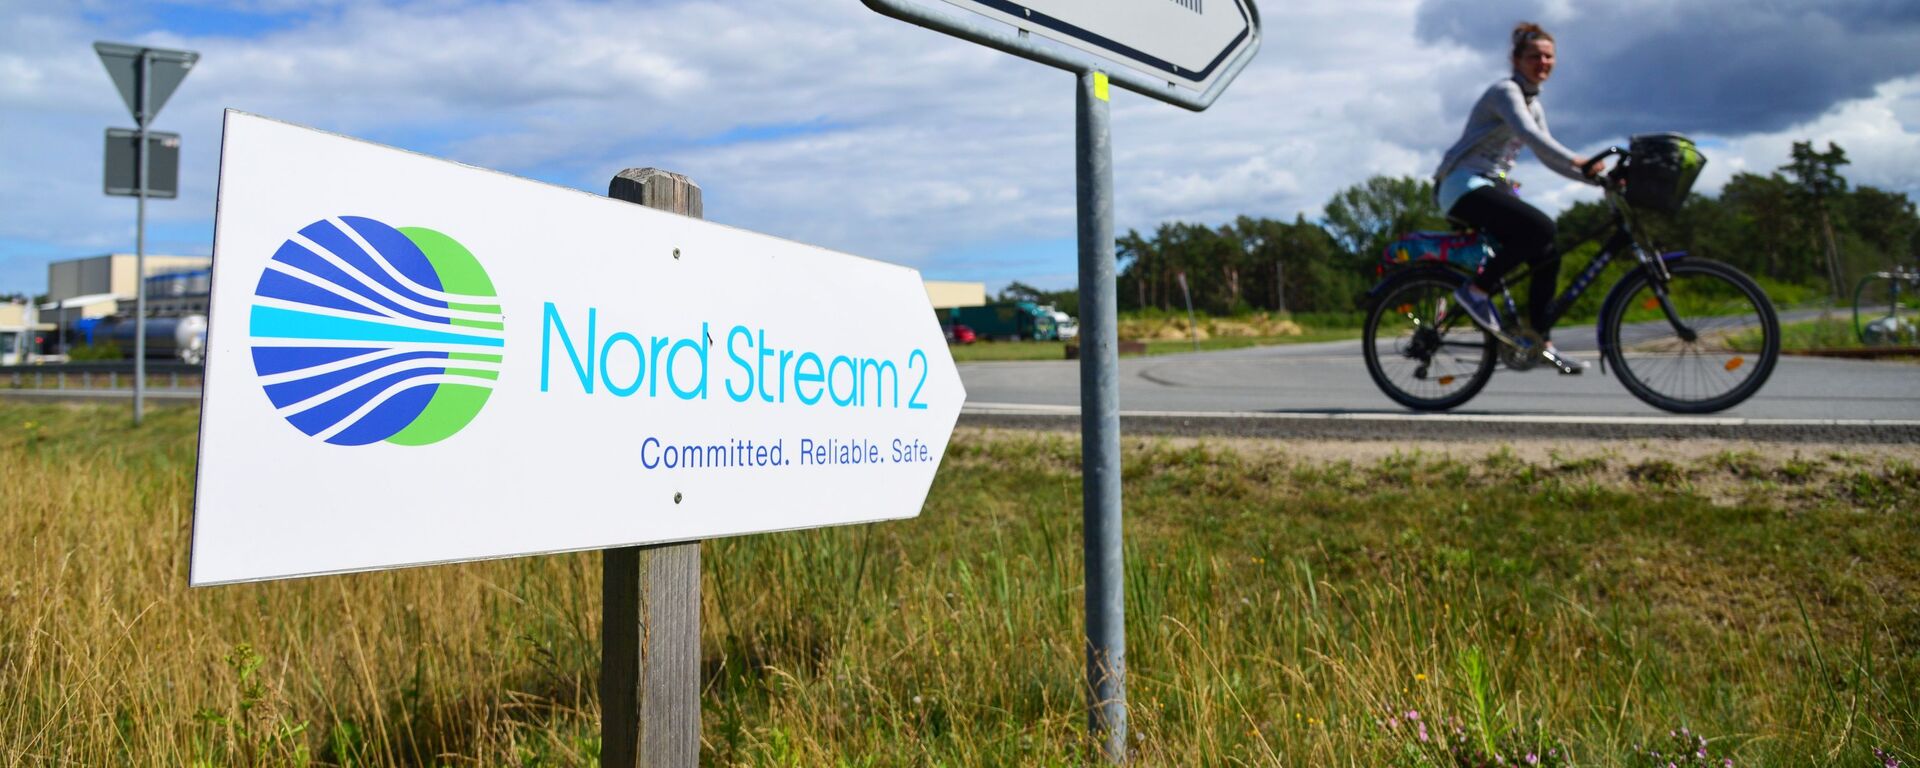 Una señal de Nord Stream 2 en Alemania - Sputnik Mundo, 1920, 23.03.2021